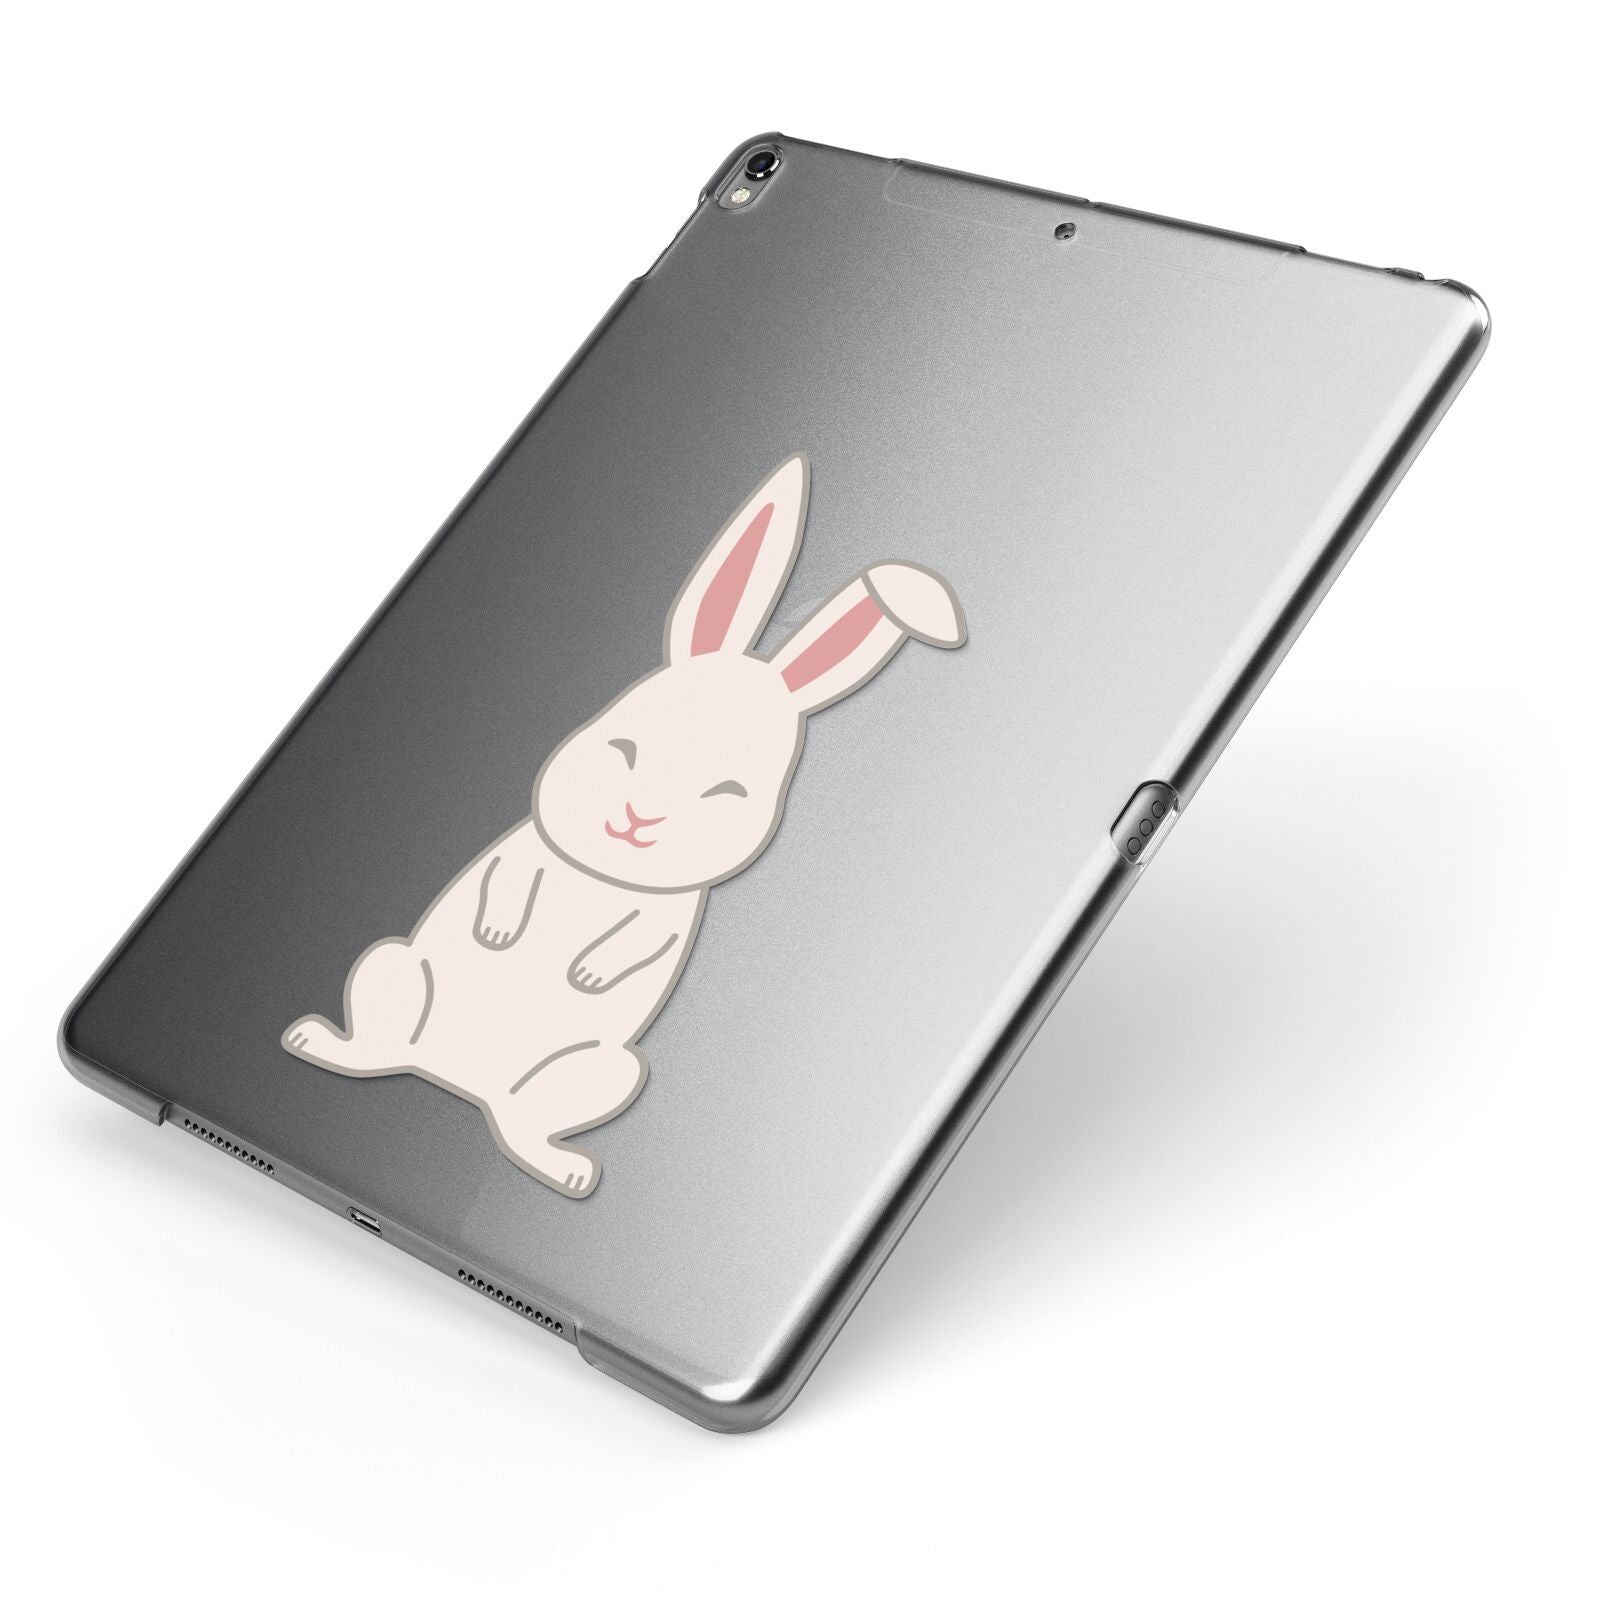 Bunny Apple iPad Case on Grey iPad Side View